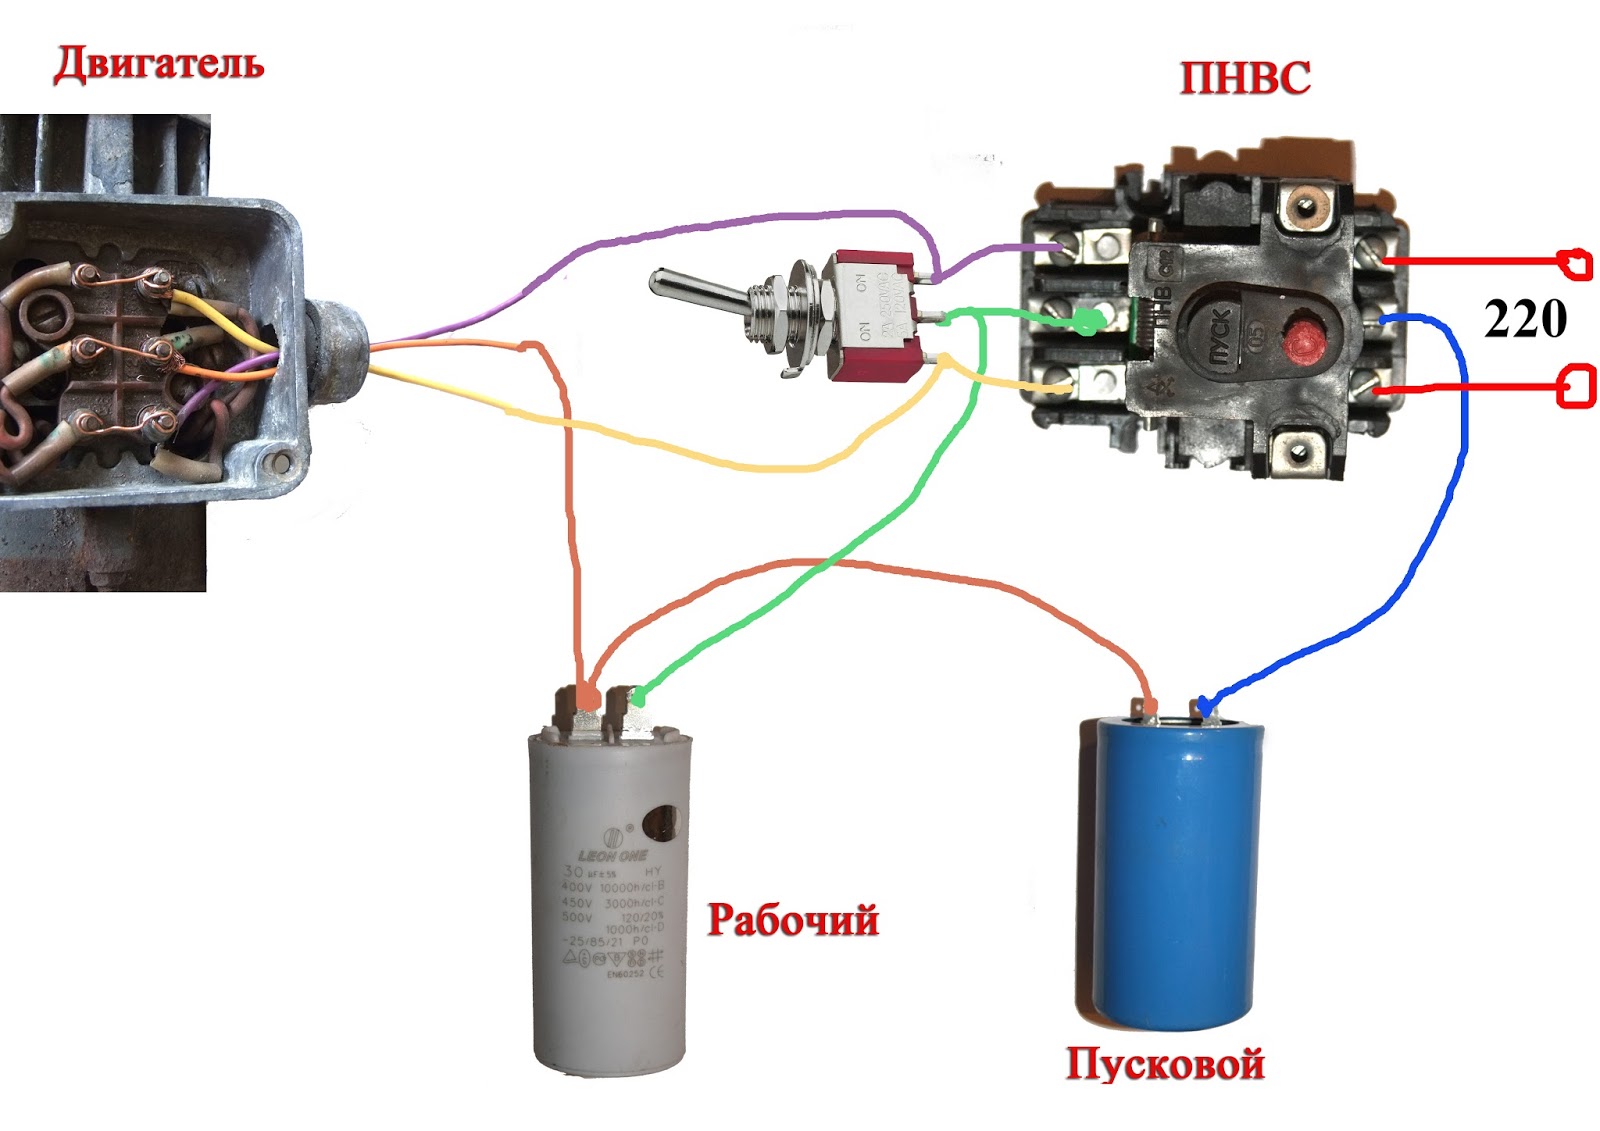 Советы по решению проблем при подключении электродвигателя с конденсатором